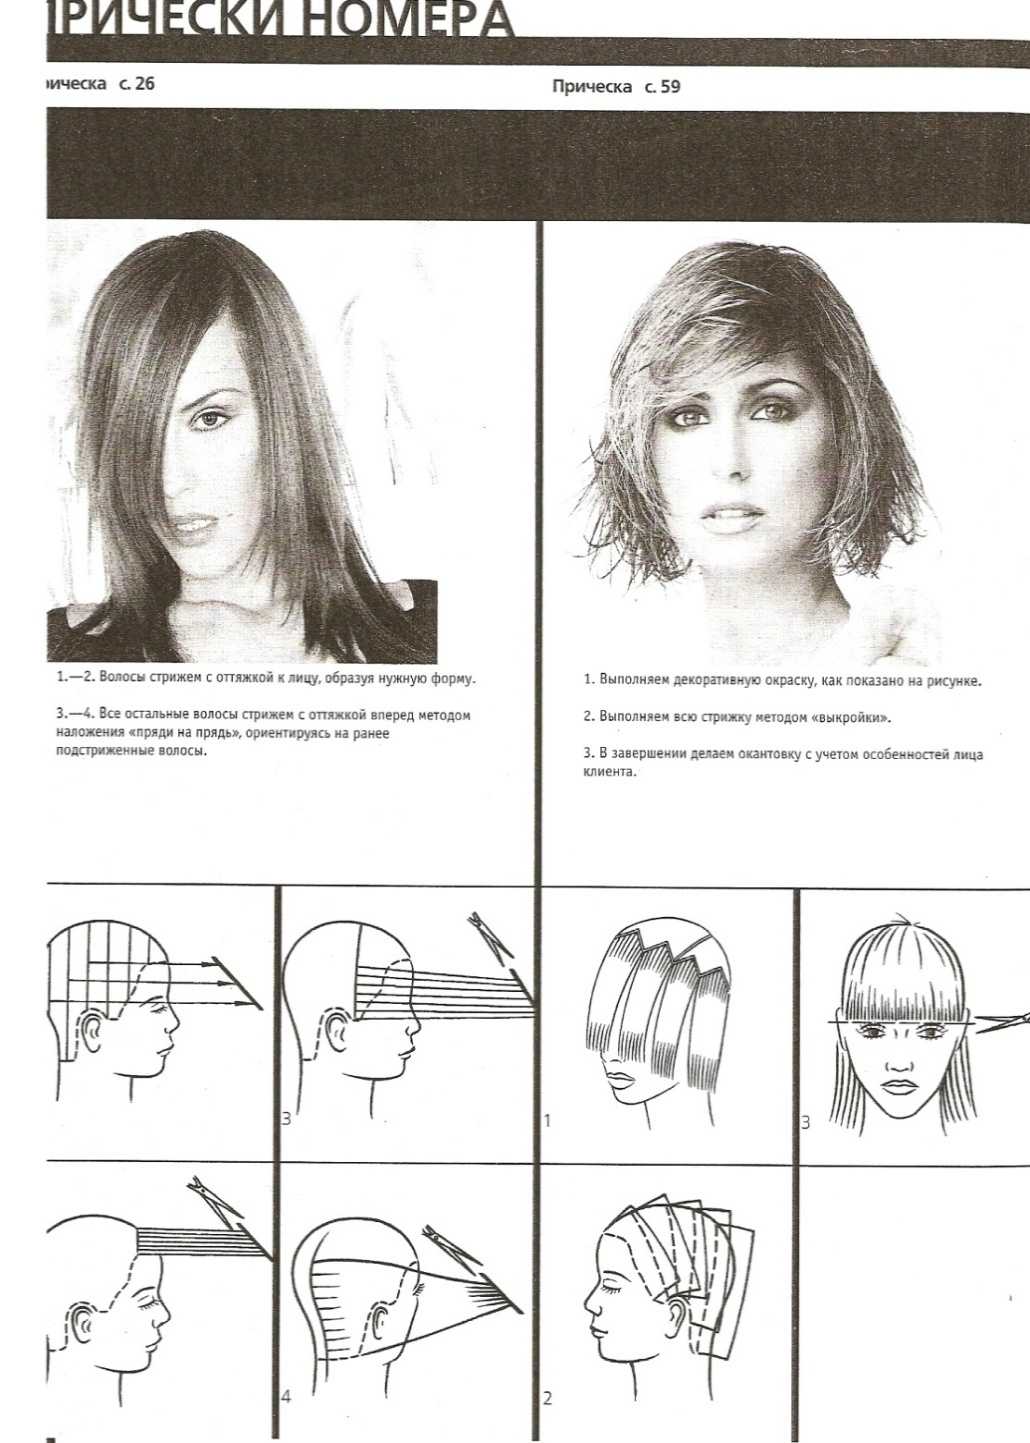 Каскад на средние волосы: как стричь, укладывать. фото стрижка 2021, вид спереди и сзади с челкой и без, схема, видео уроки